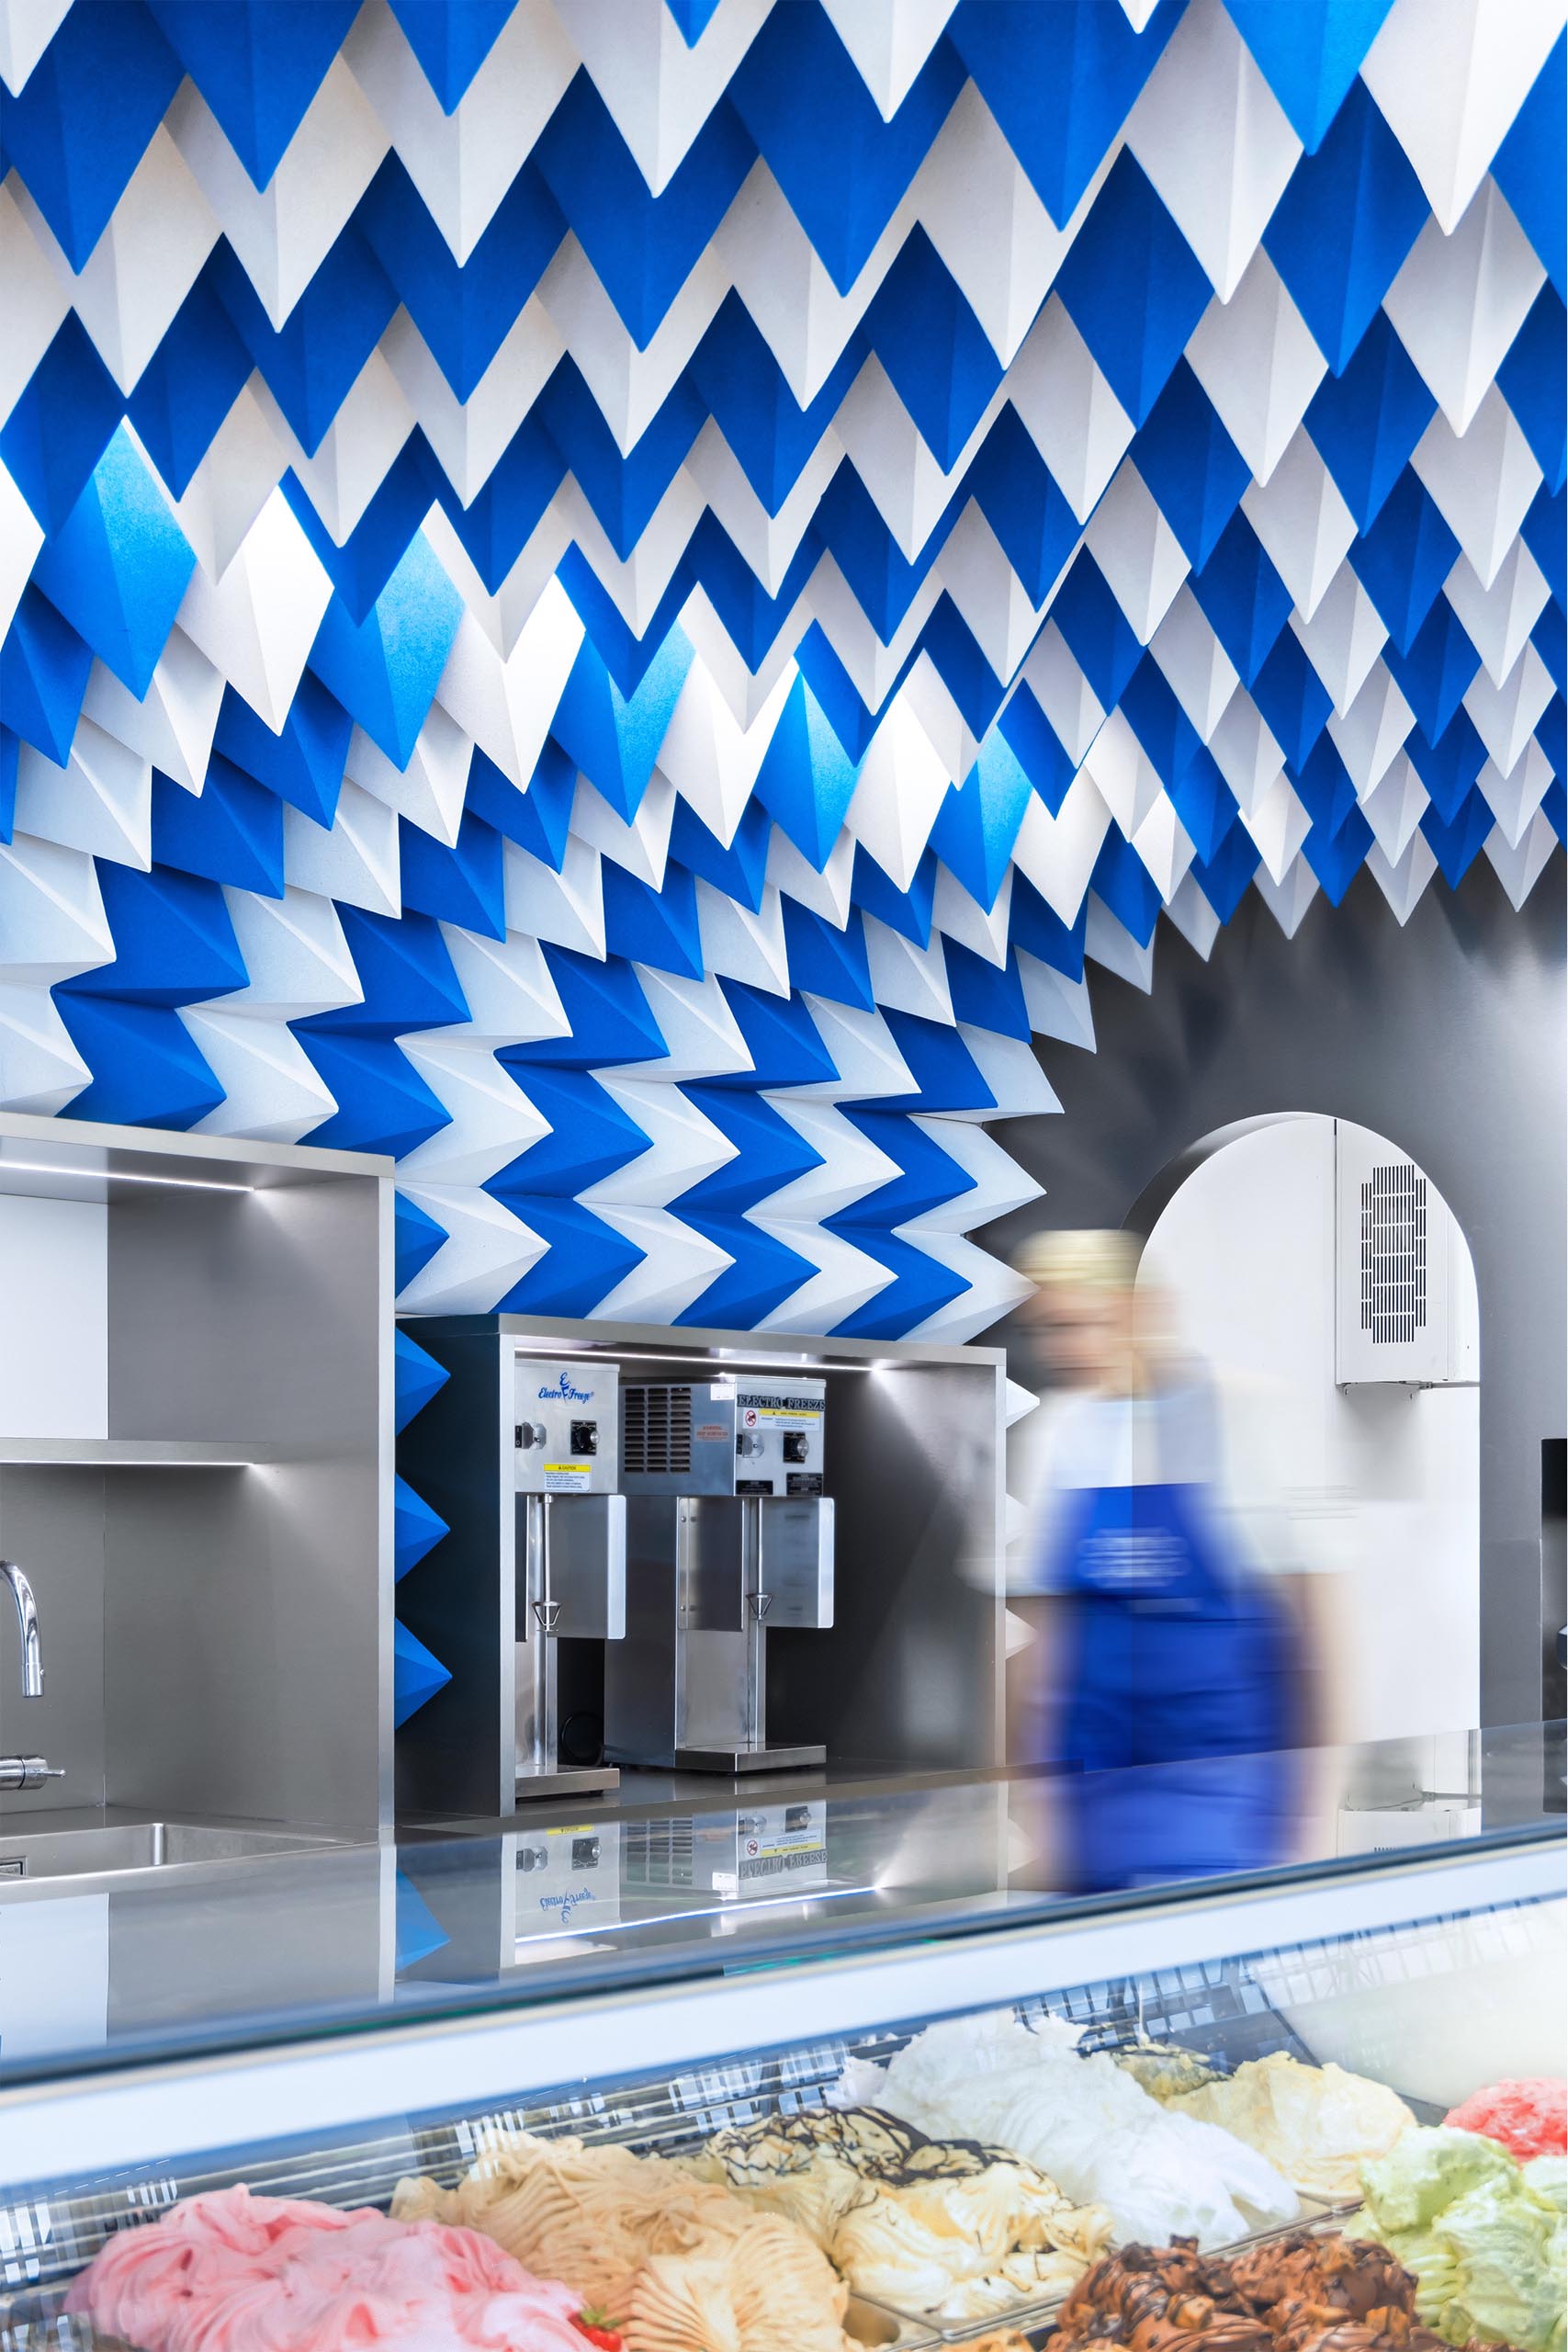 Современный магазин мороженого со скульптурной потолочной инсталляцией.